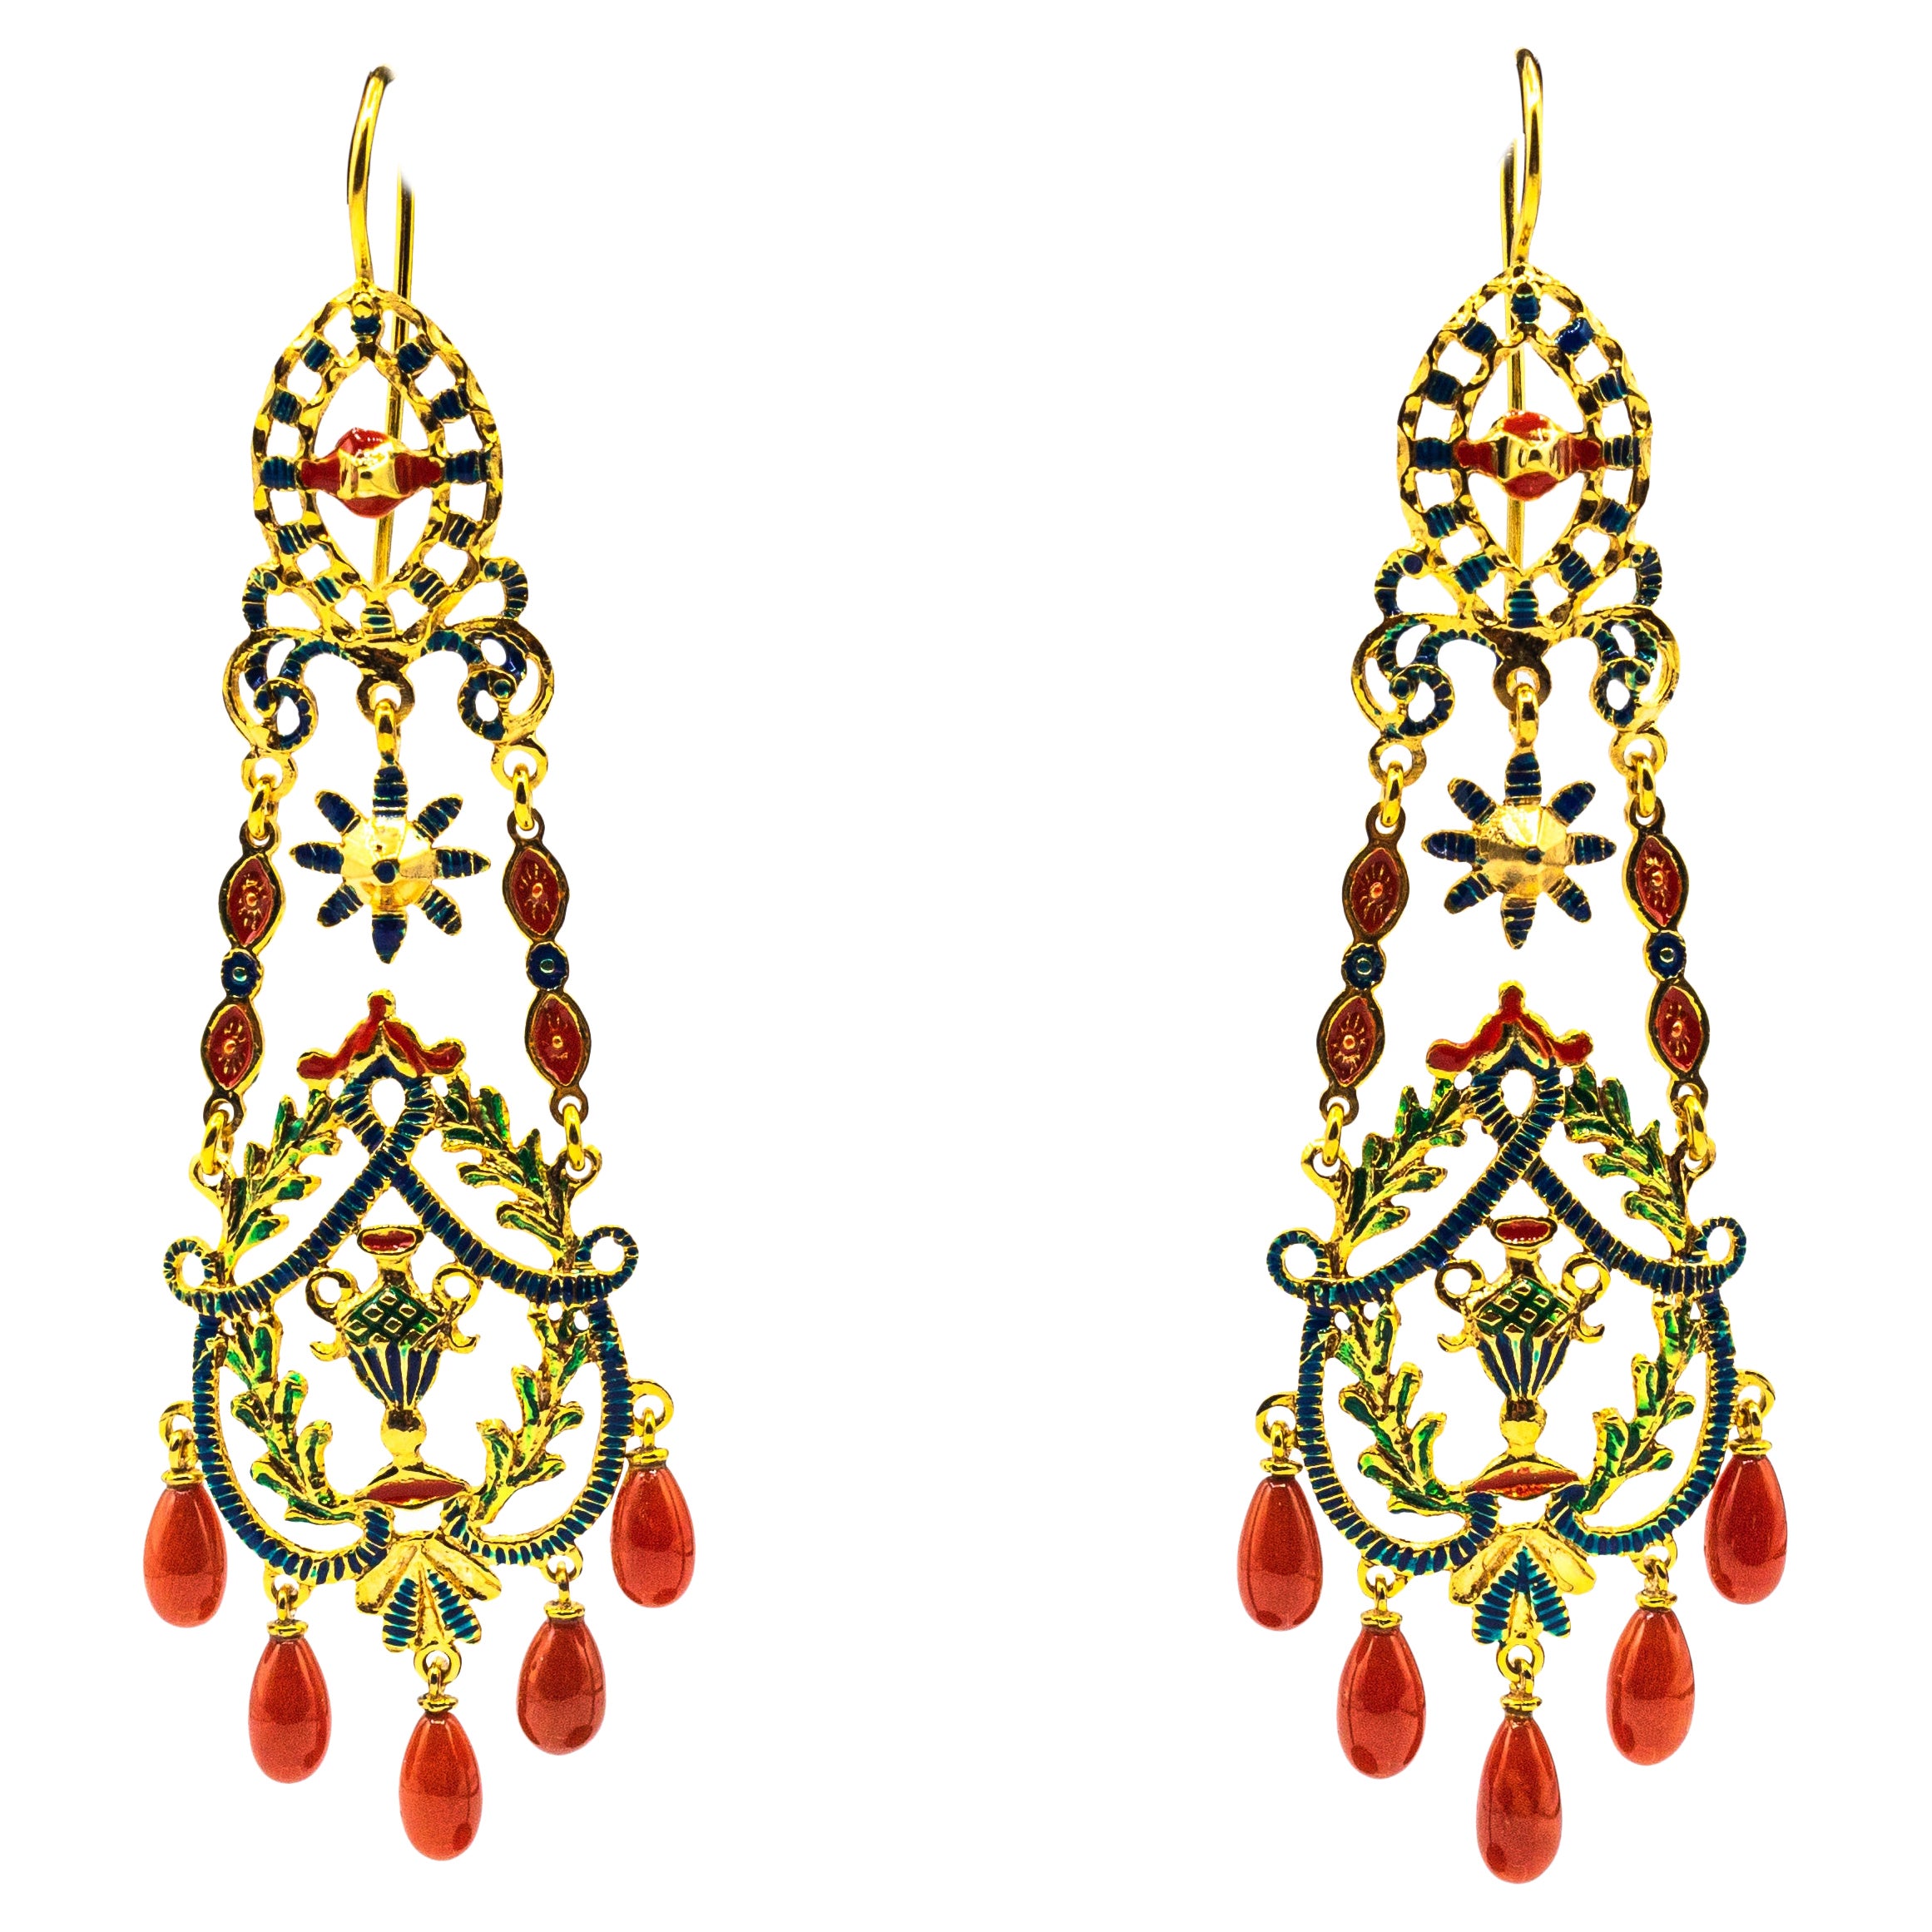 Clous d'oreilles en goutte de style Art Nouveau en or jaune, émail et corail rouge méditerranéen